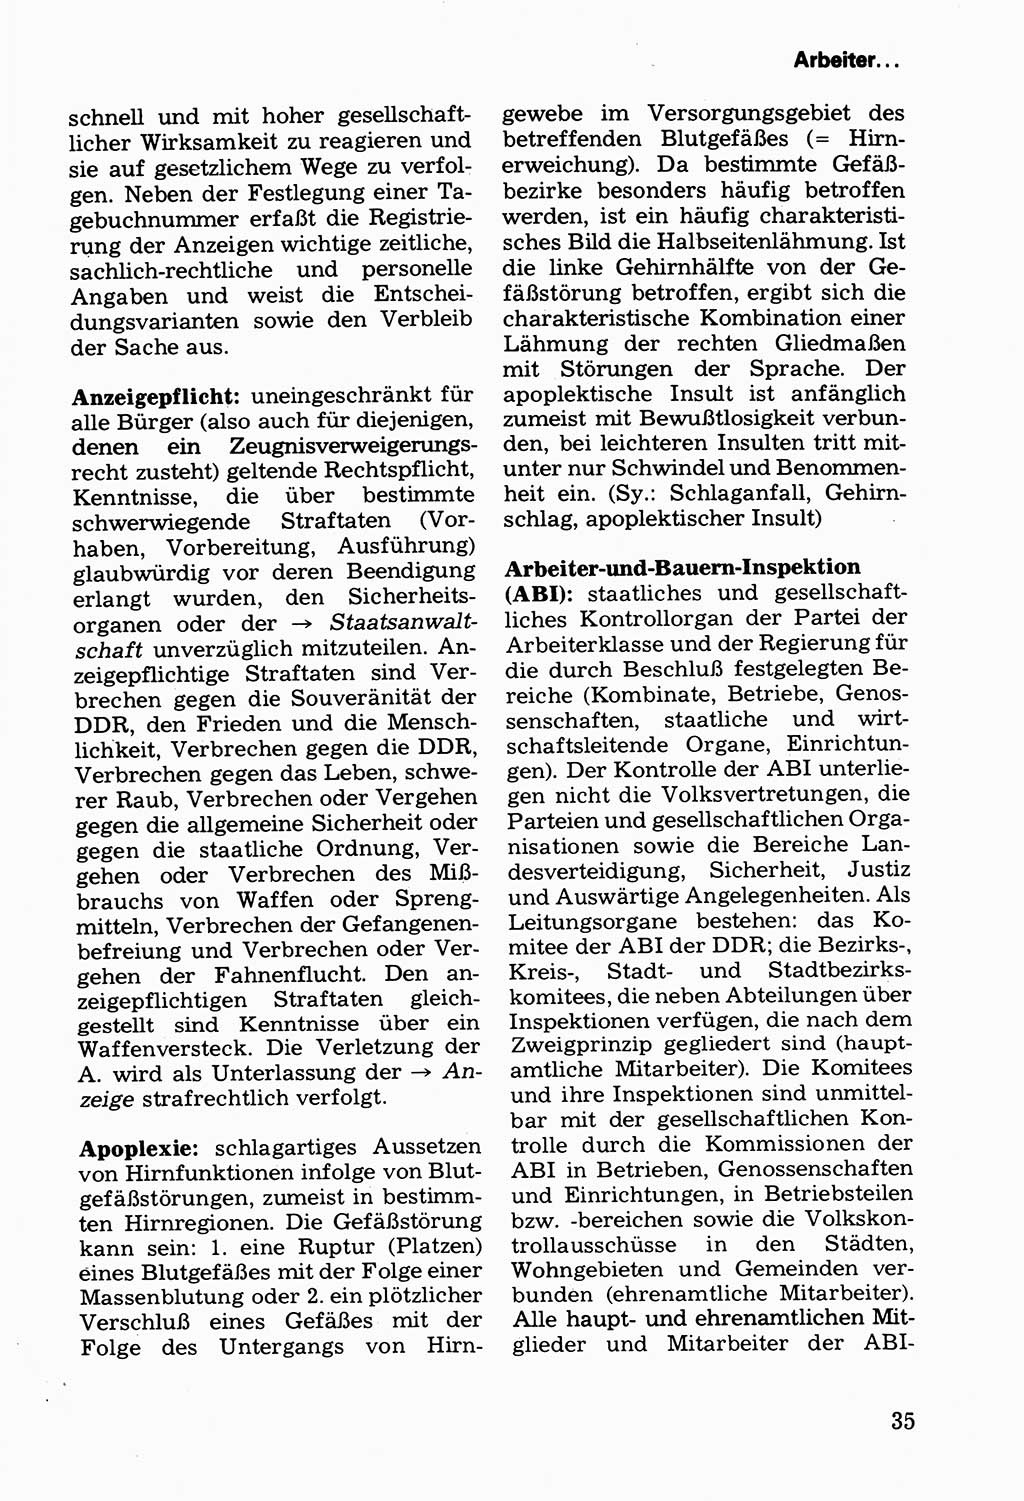 Wörterbuch der sozialistischen Kriminalistik [Deutsche Demokratische Republik (DDR)] 1981, Seite 35 (Wb. soz. Krim. DDR 1981, S. 35)